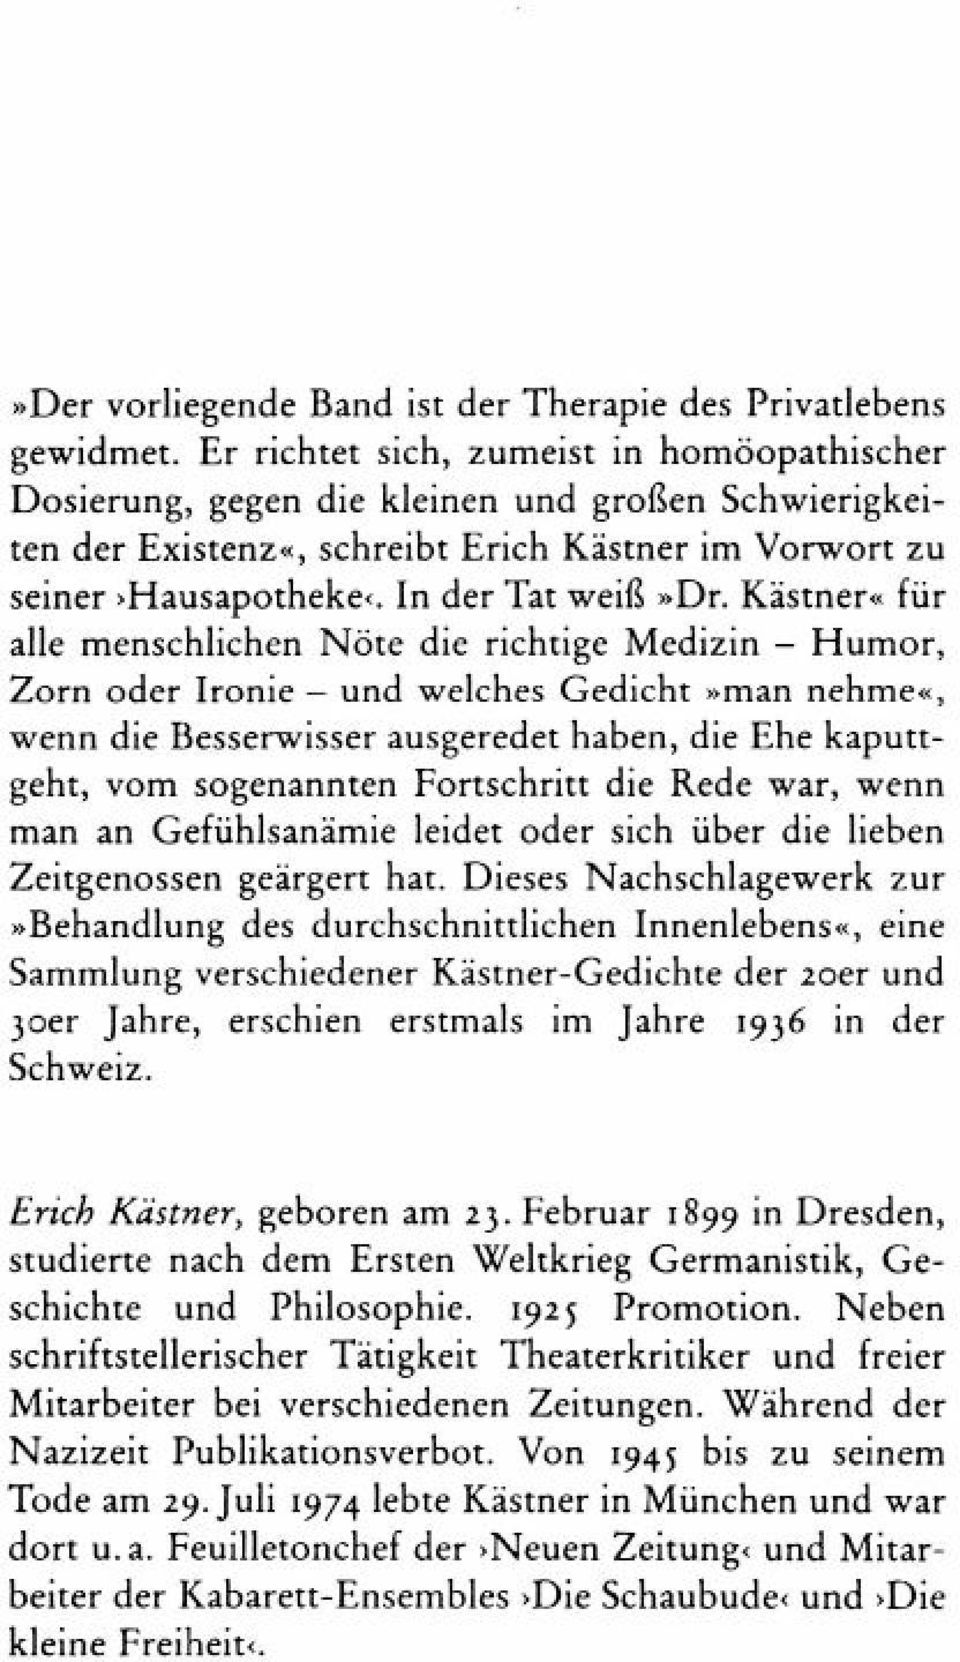 Erich Kastner Geboren Am 23 Februar 1899 In Dresden Pdf Kostenfreier Download